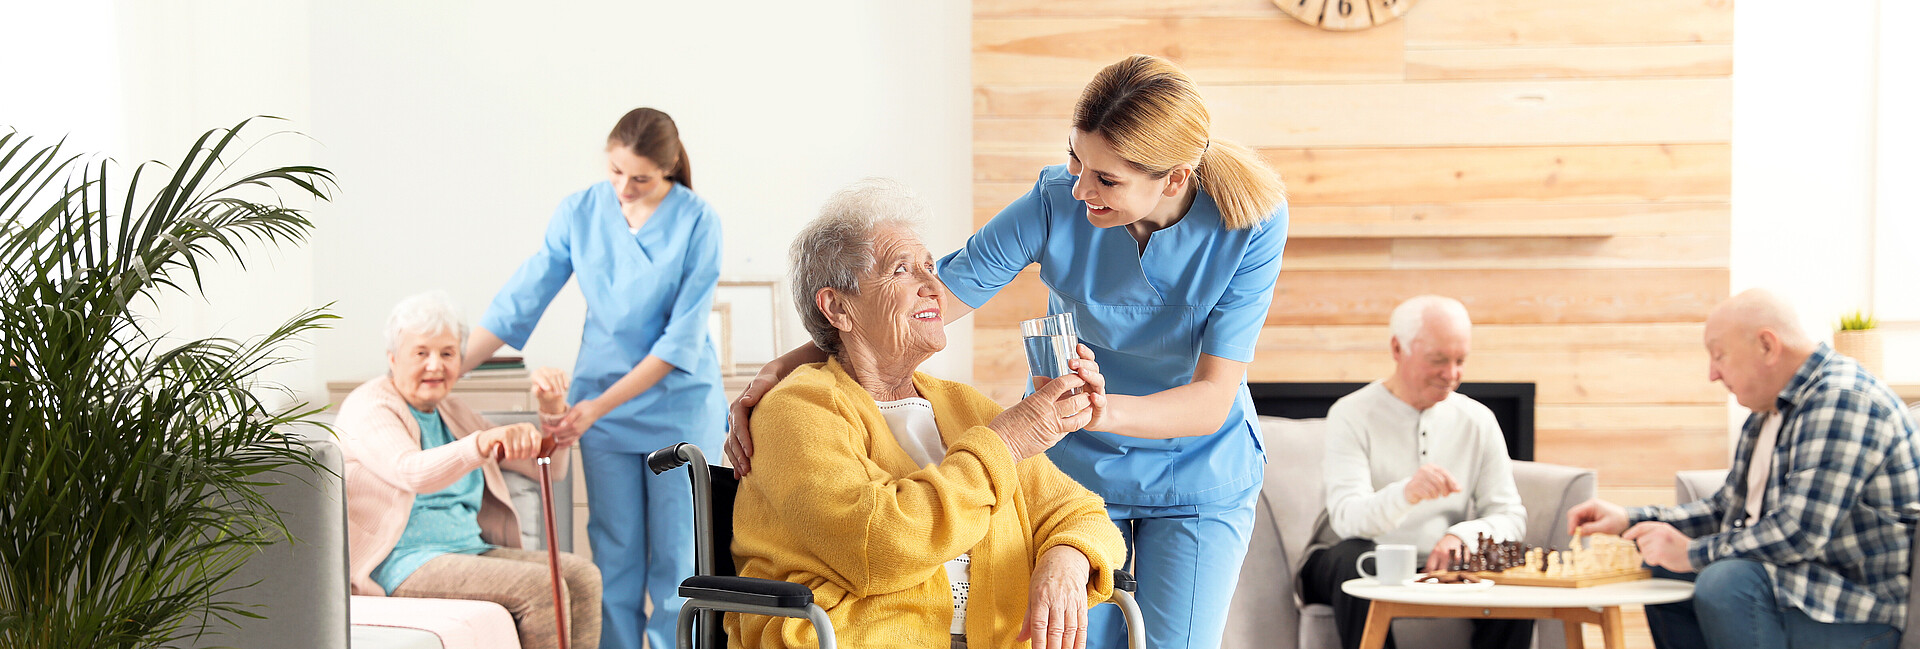 Eine Pflegerin gibt einer Seniorin im Rollstuhl ein Glas Wasser